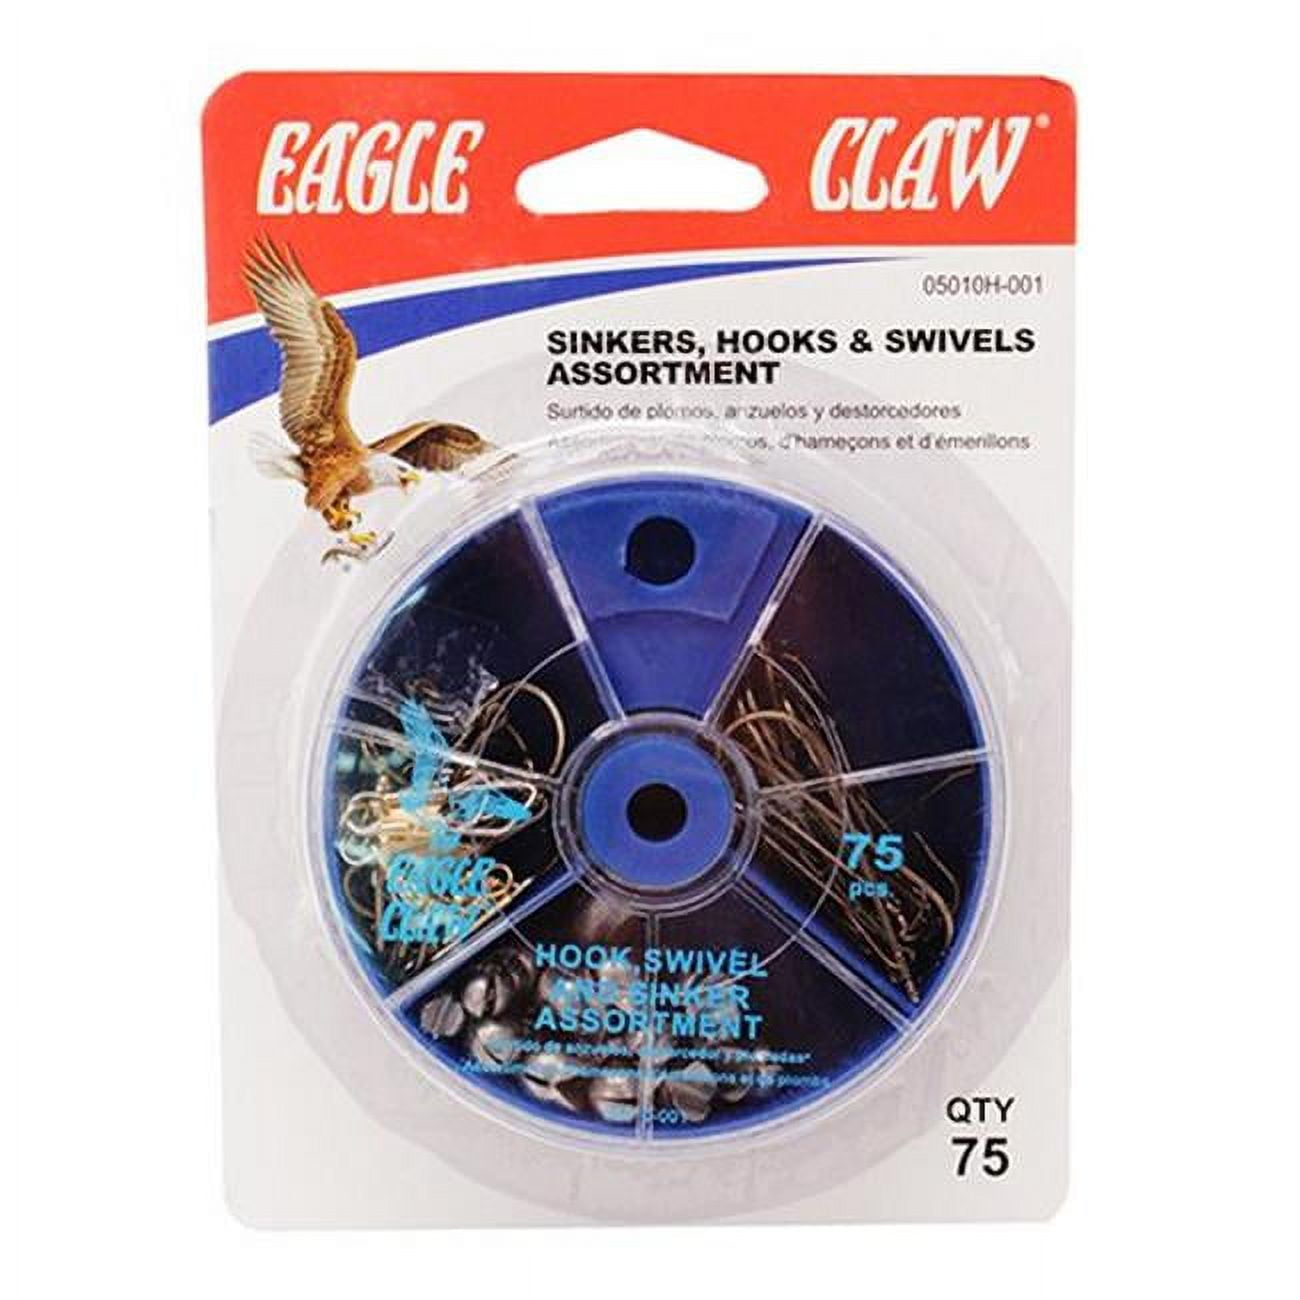 Eagle Claw Assortment Hook Swivel Sinker